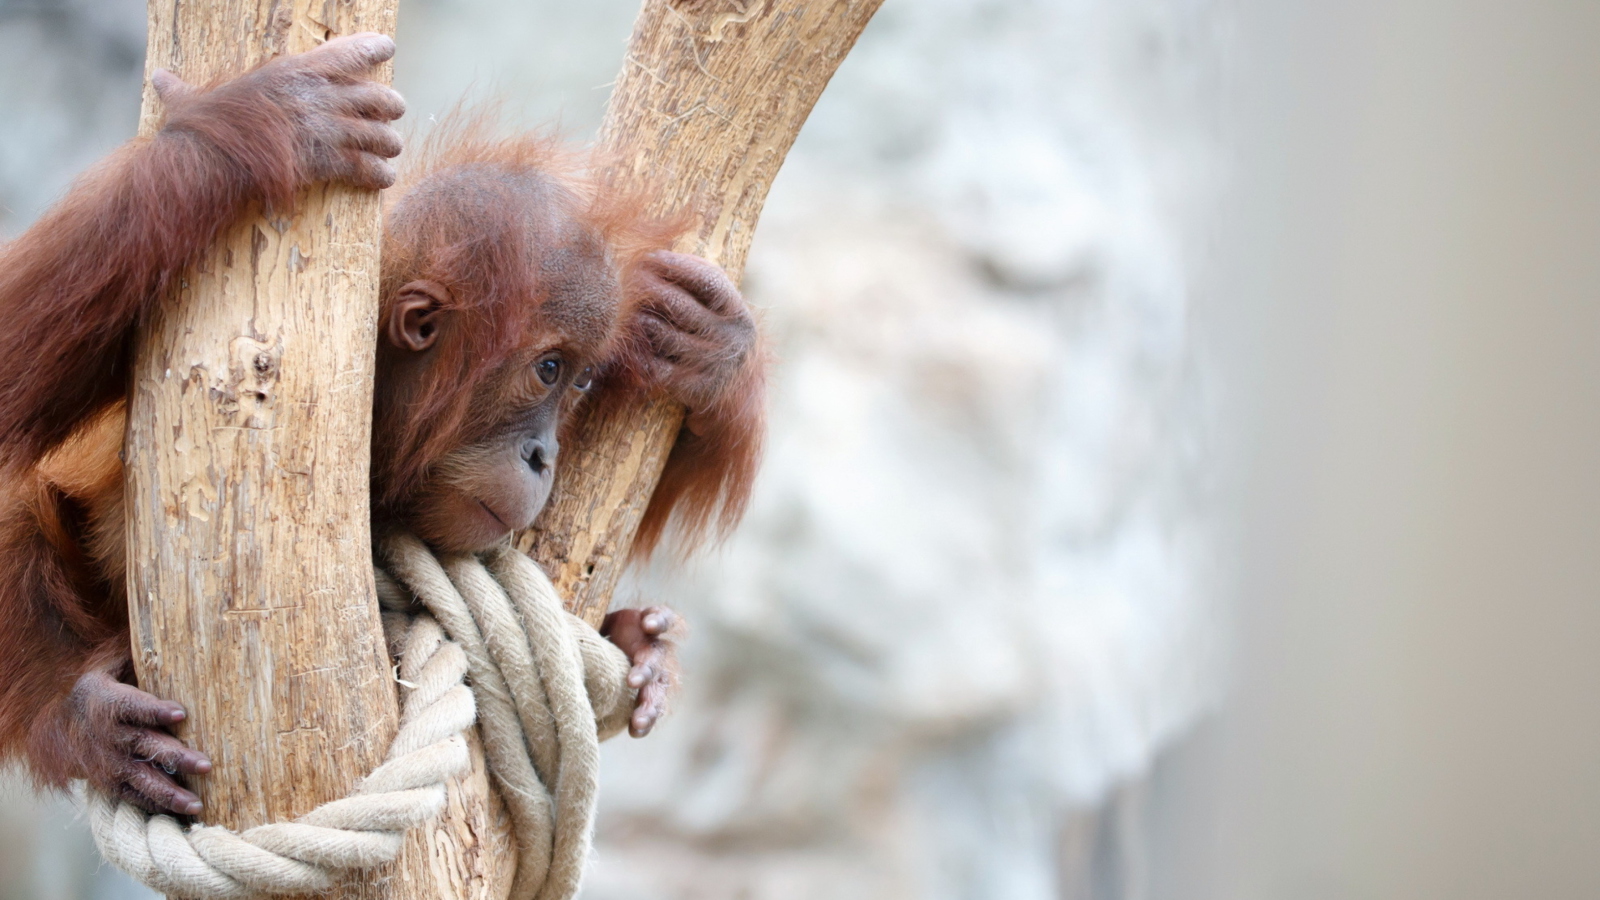 Sfondi Cute Little Monkey In Zoo 1600x900